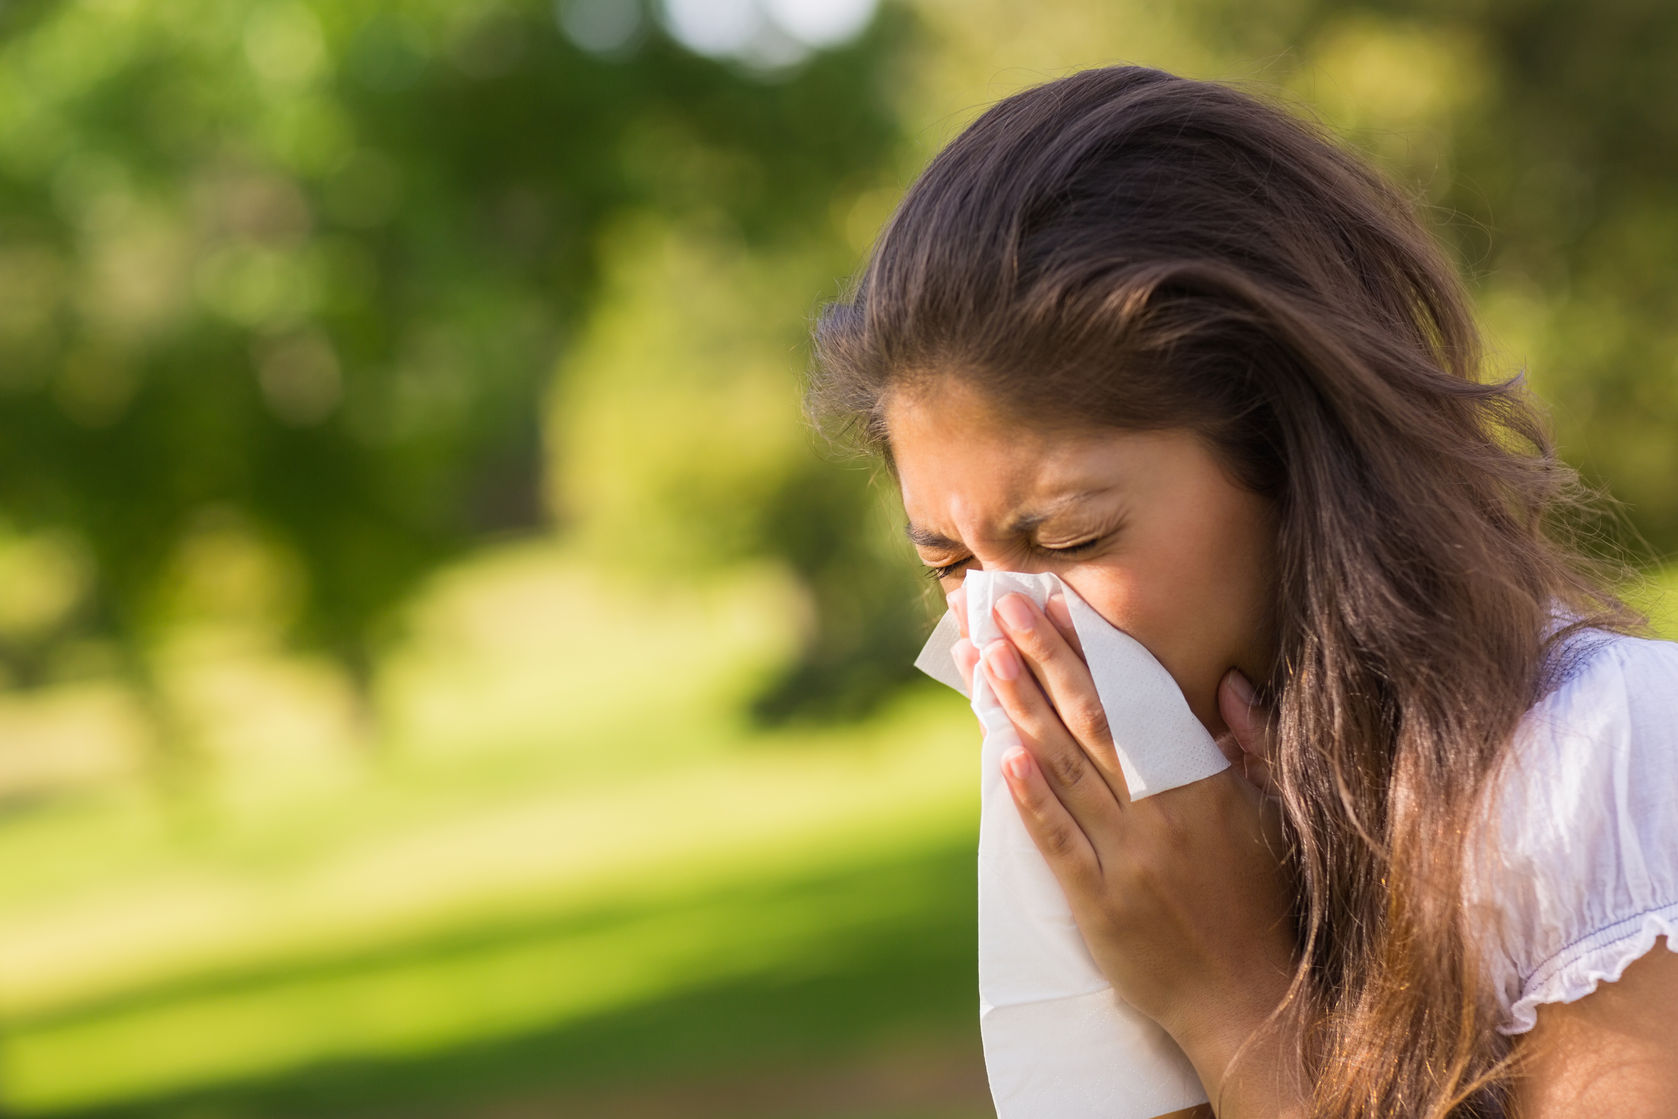 Аллергия - одно из самых распространенных заболеваний 21 века